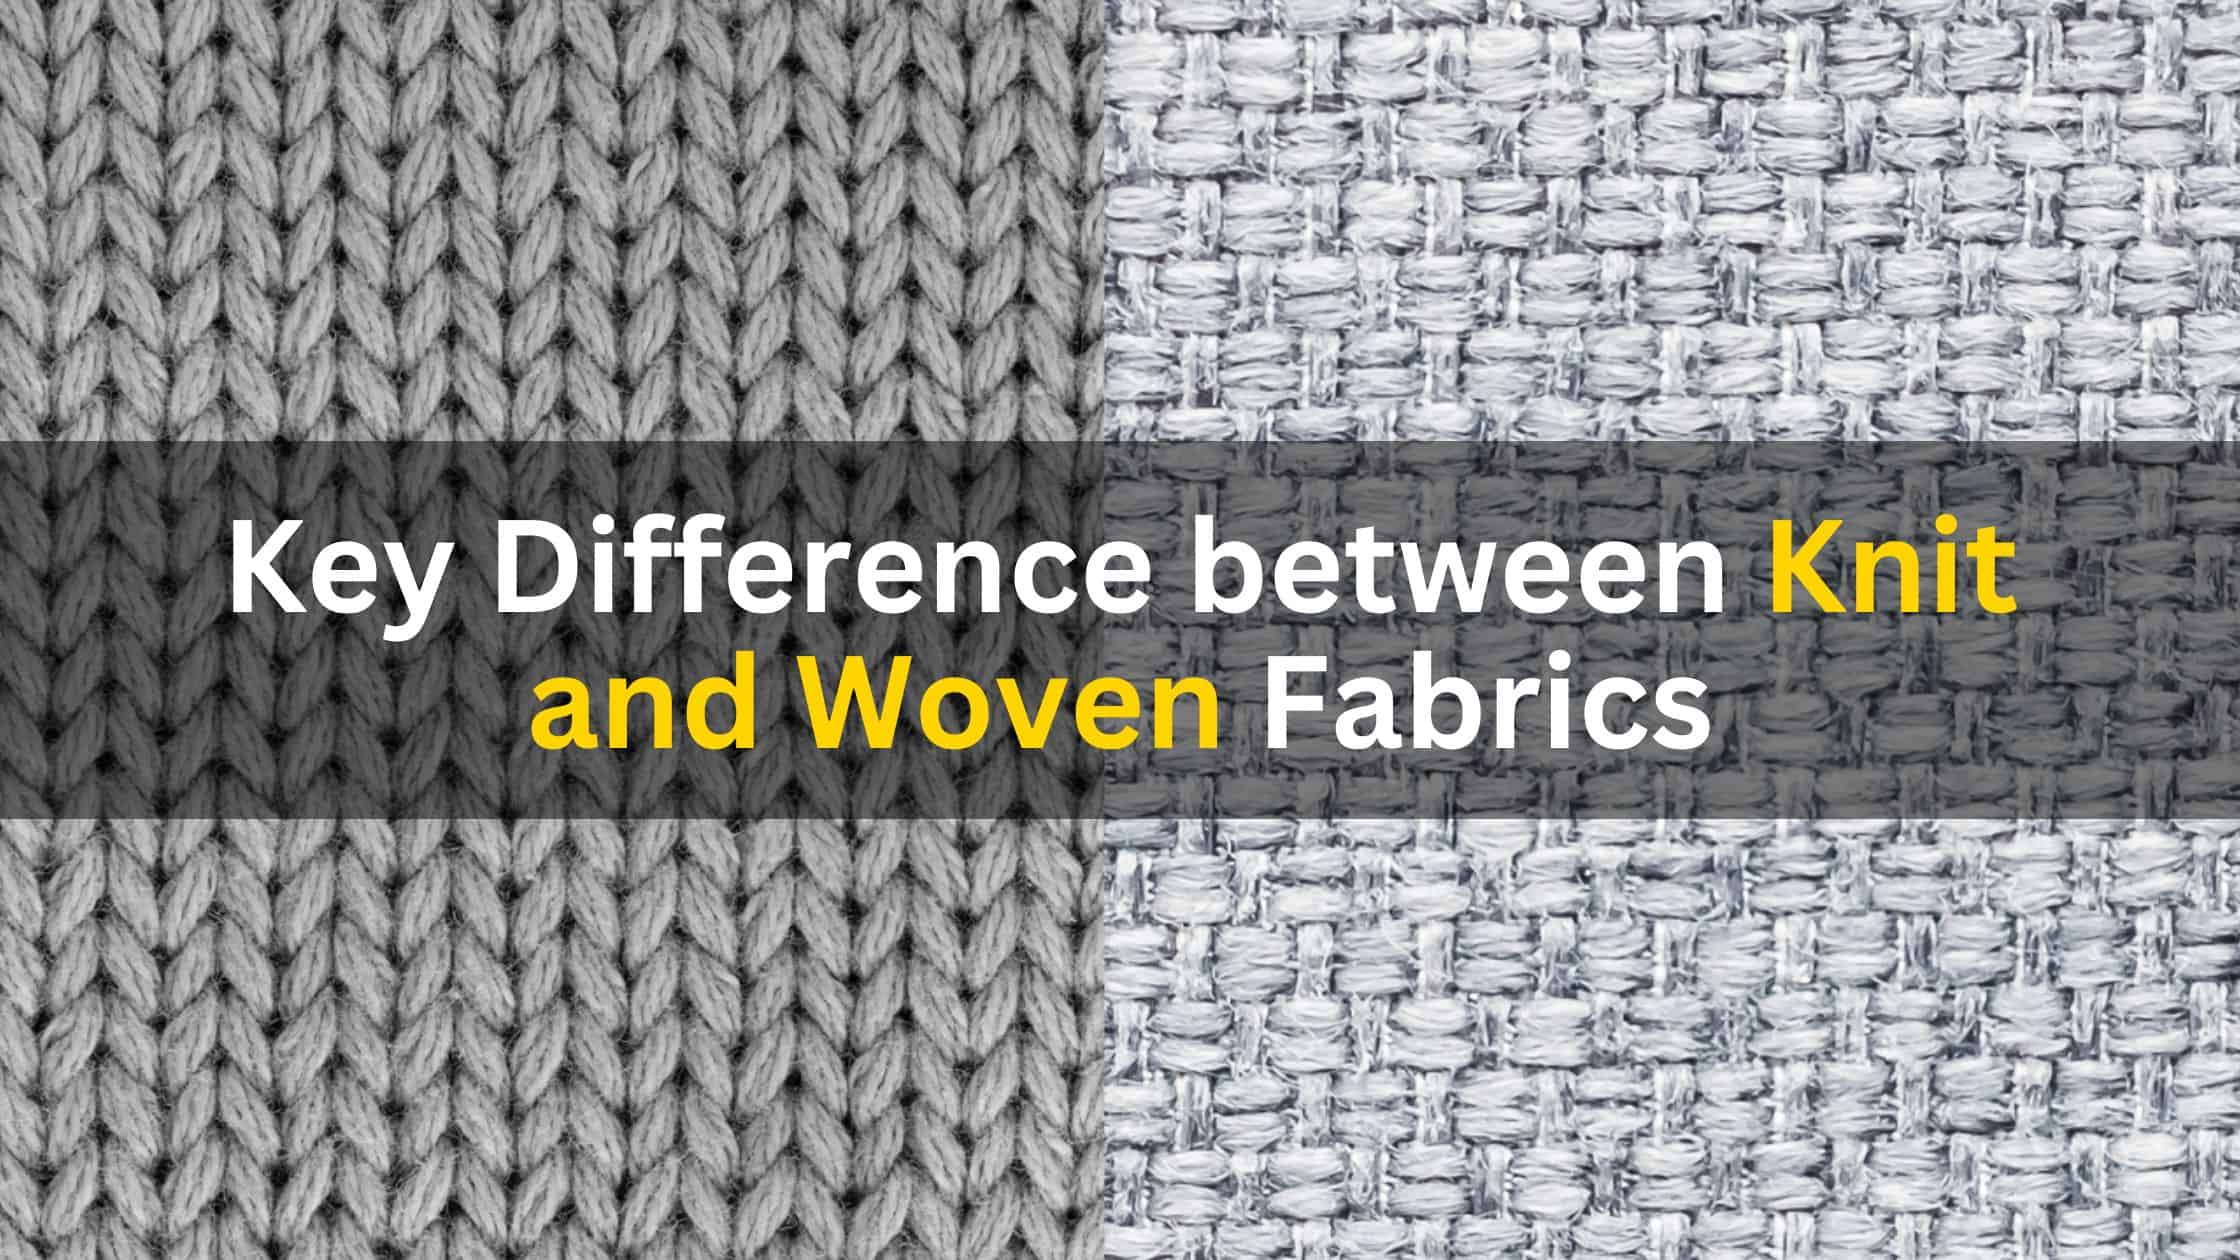 woven-fabrics